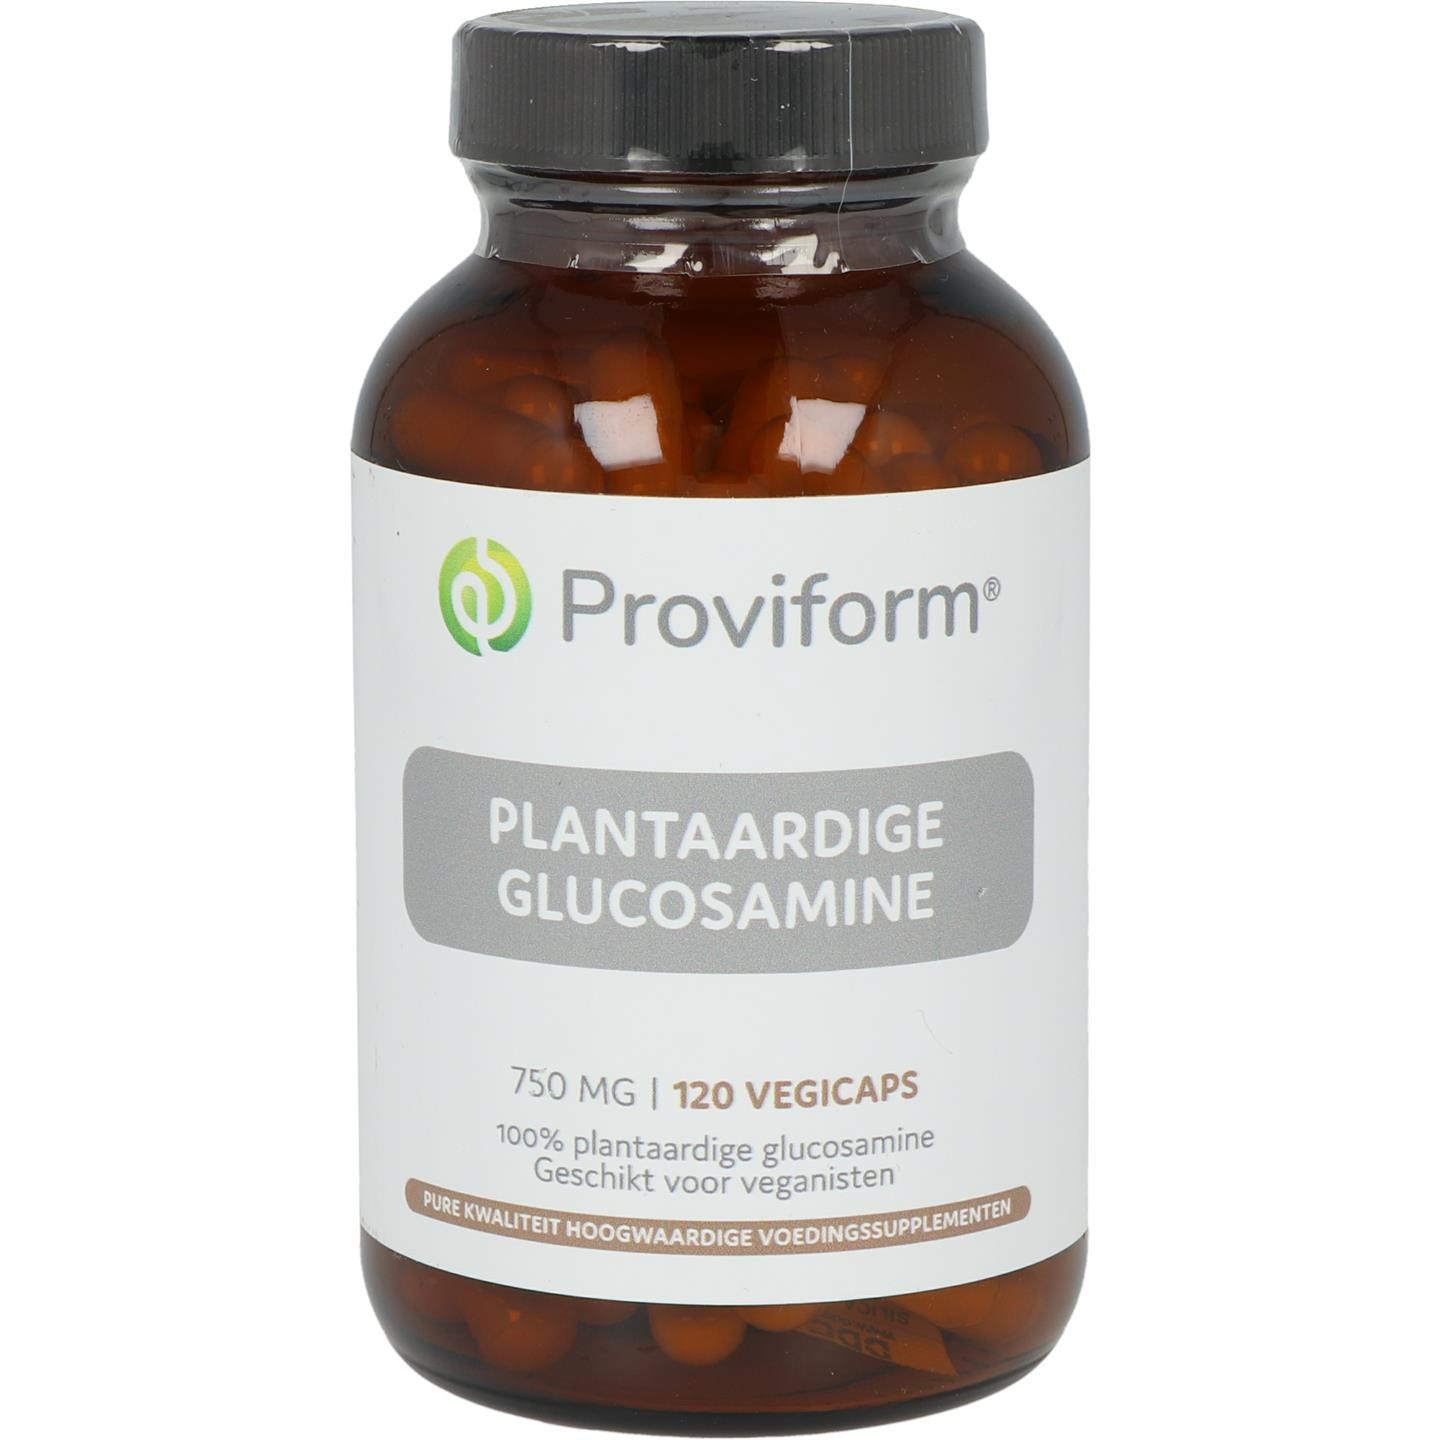 Plantaardige Glucosamine